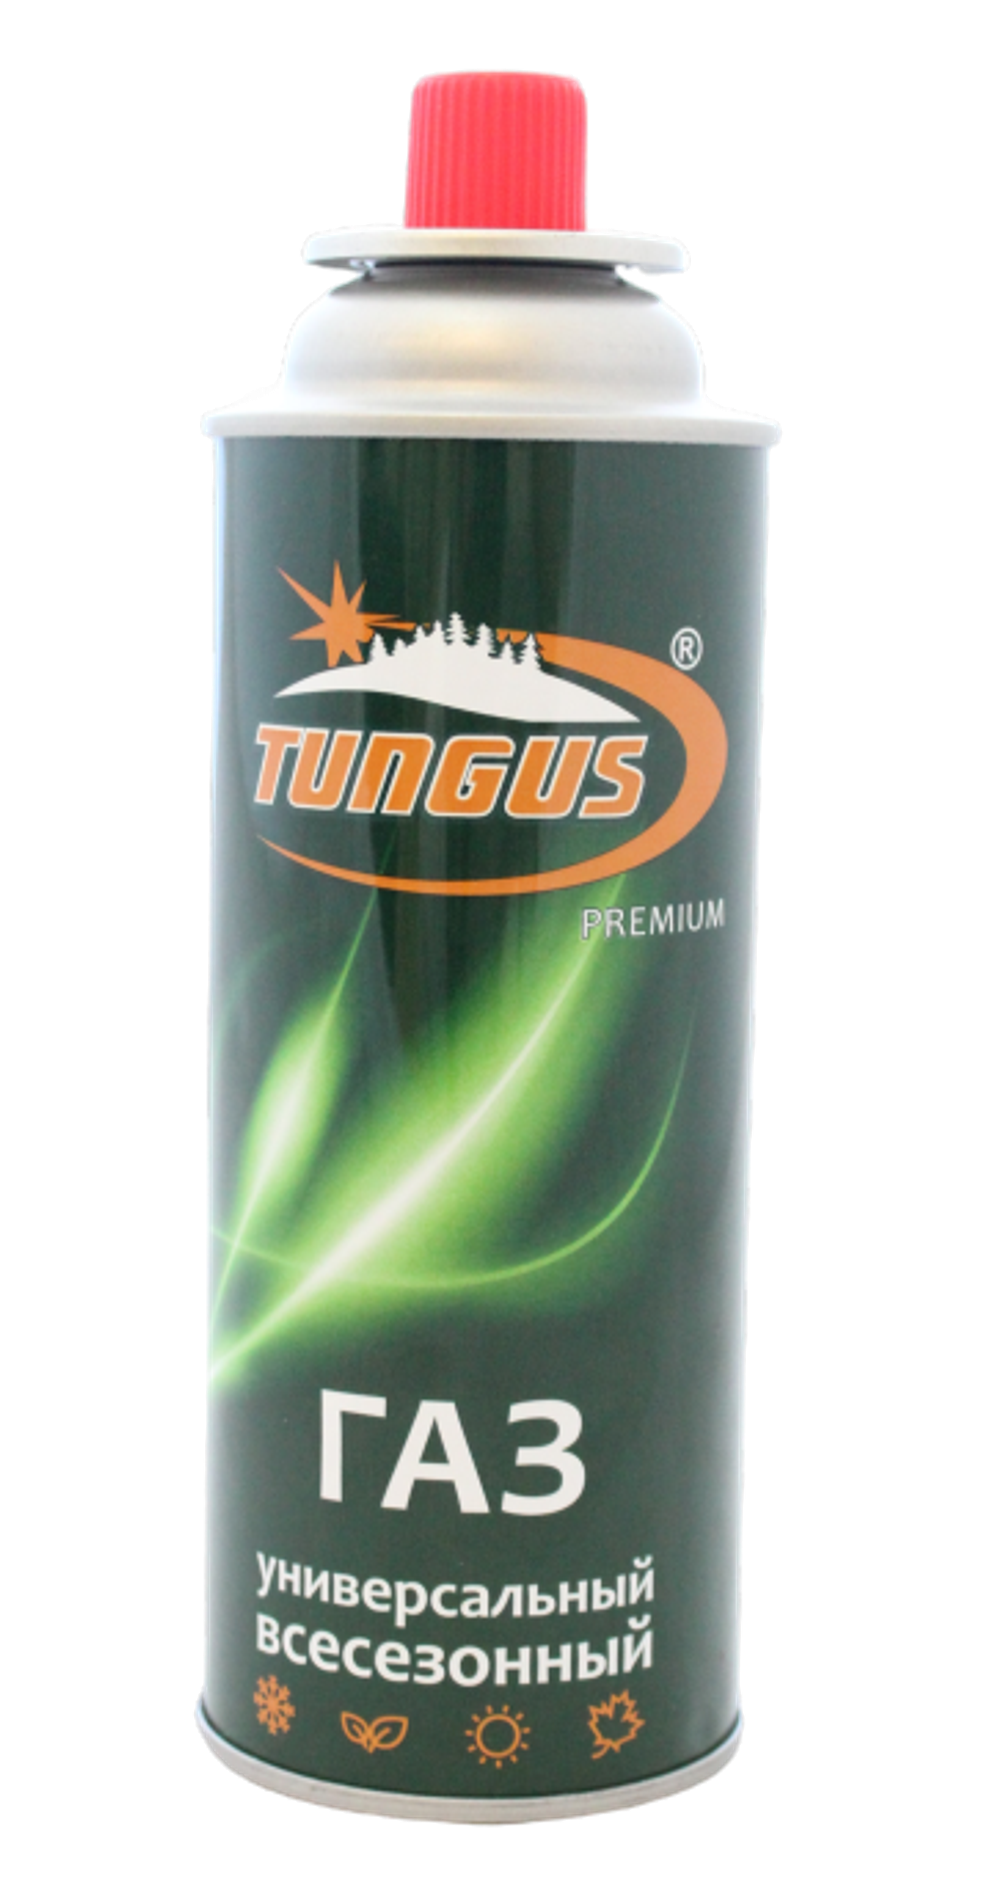 Газовый картридж "Tungus" Premium, 220гр. цанговый,  (всесезонный)